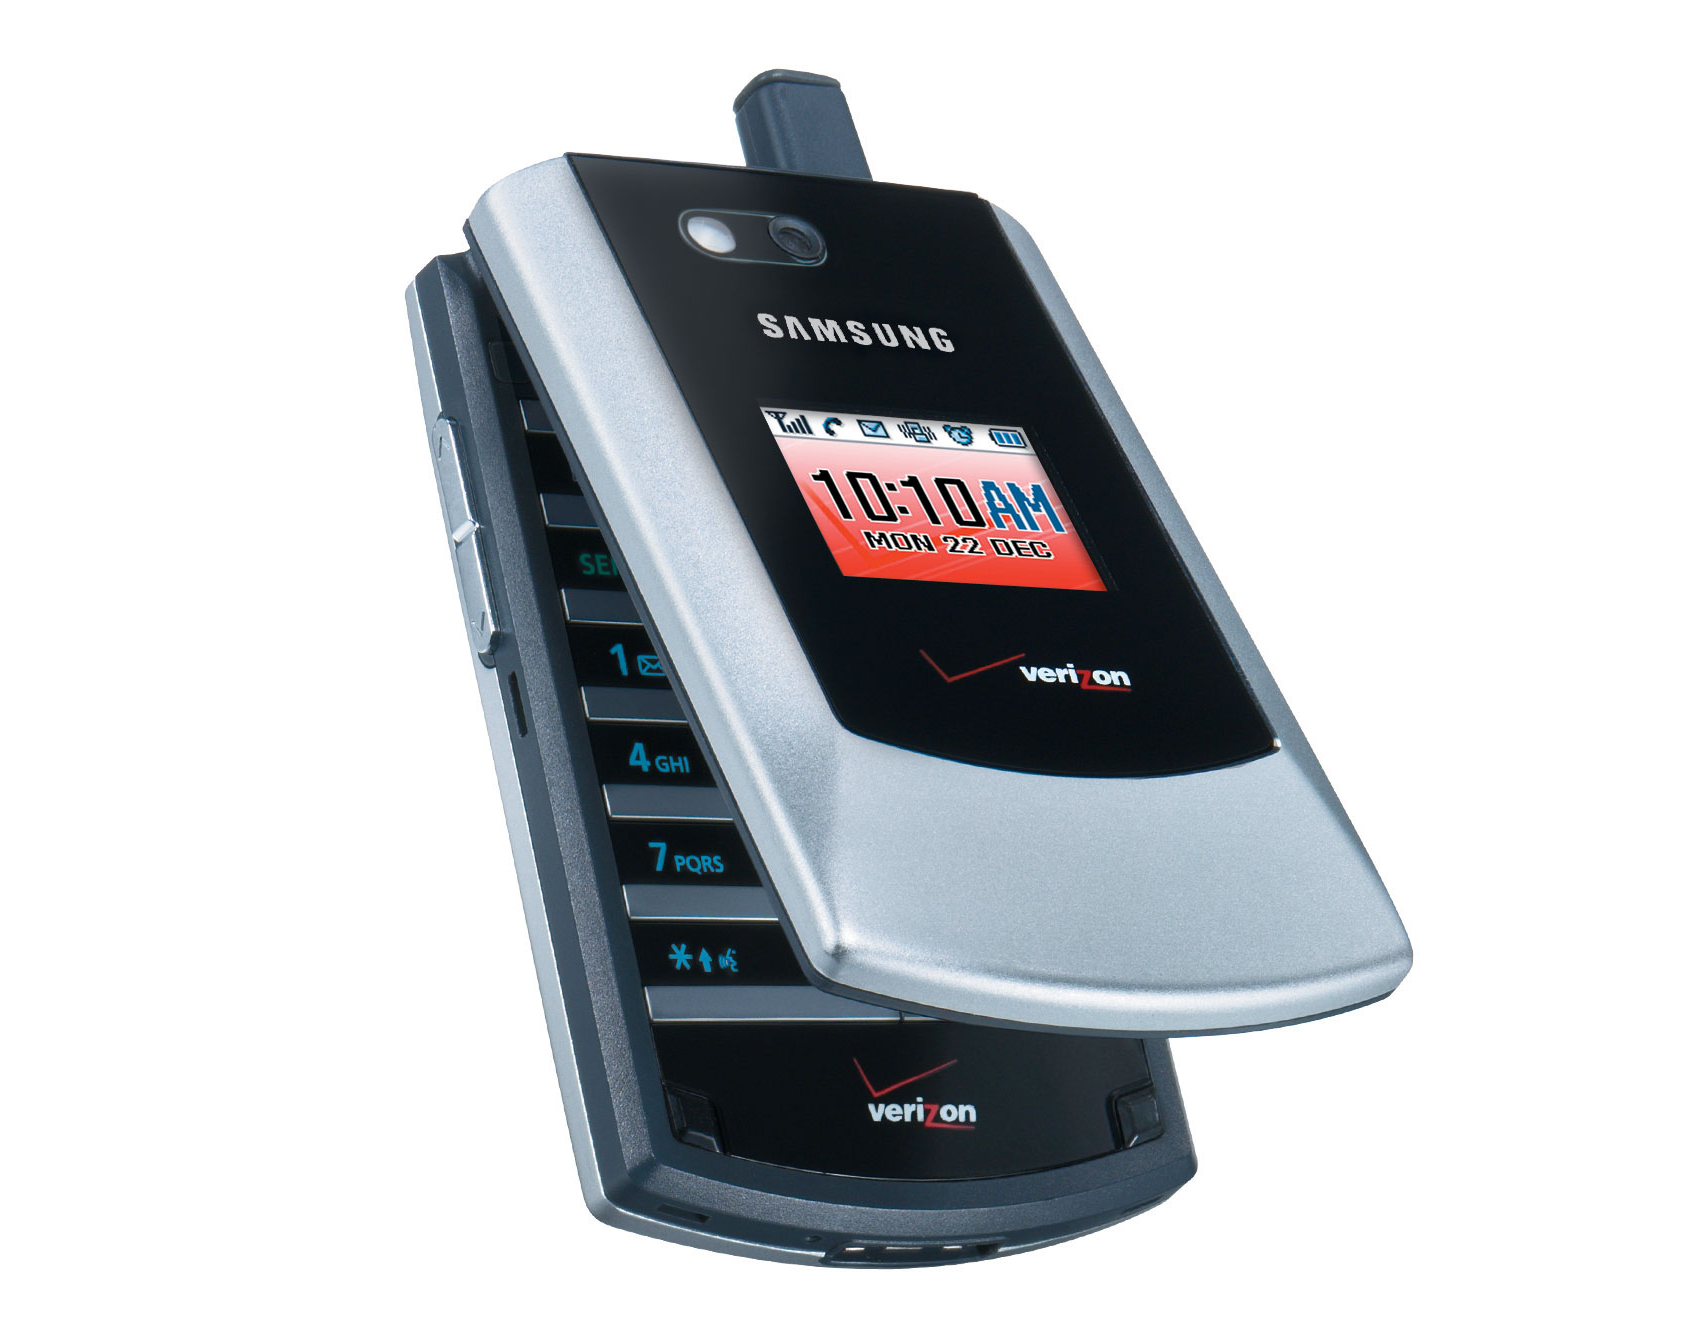 ТОП-10 телефонів Самсунг розкладачок: від витоків до сучасності